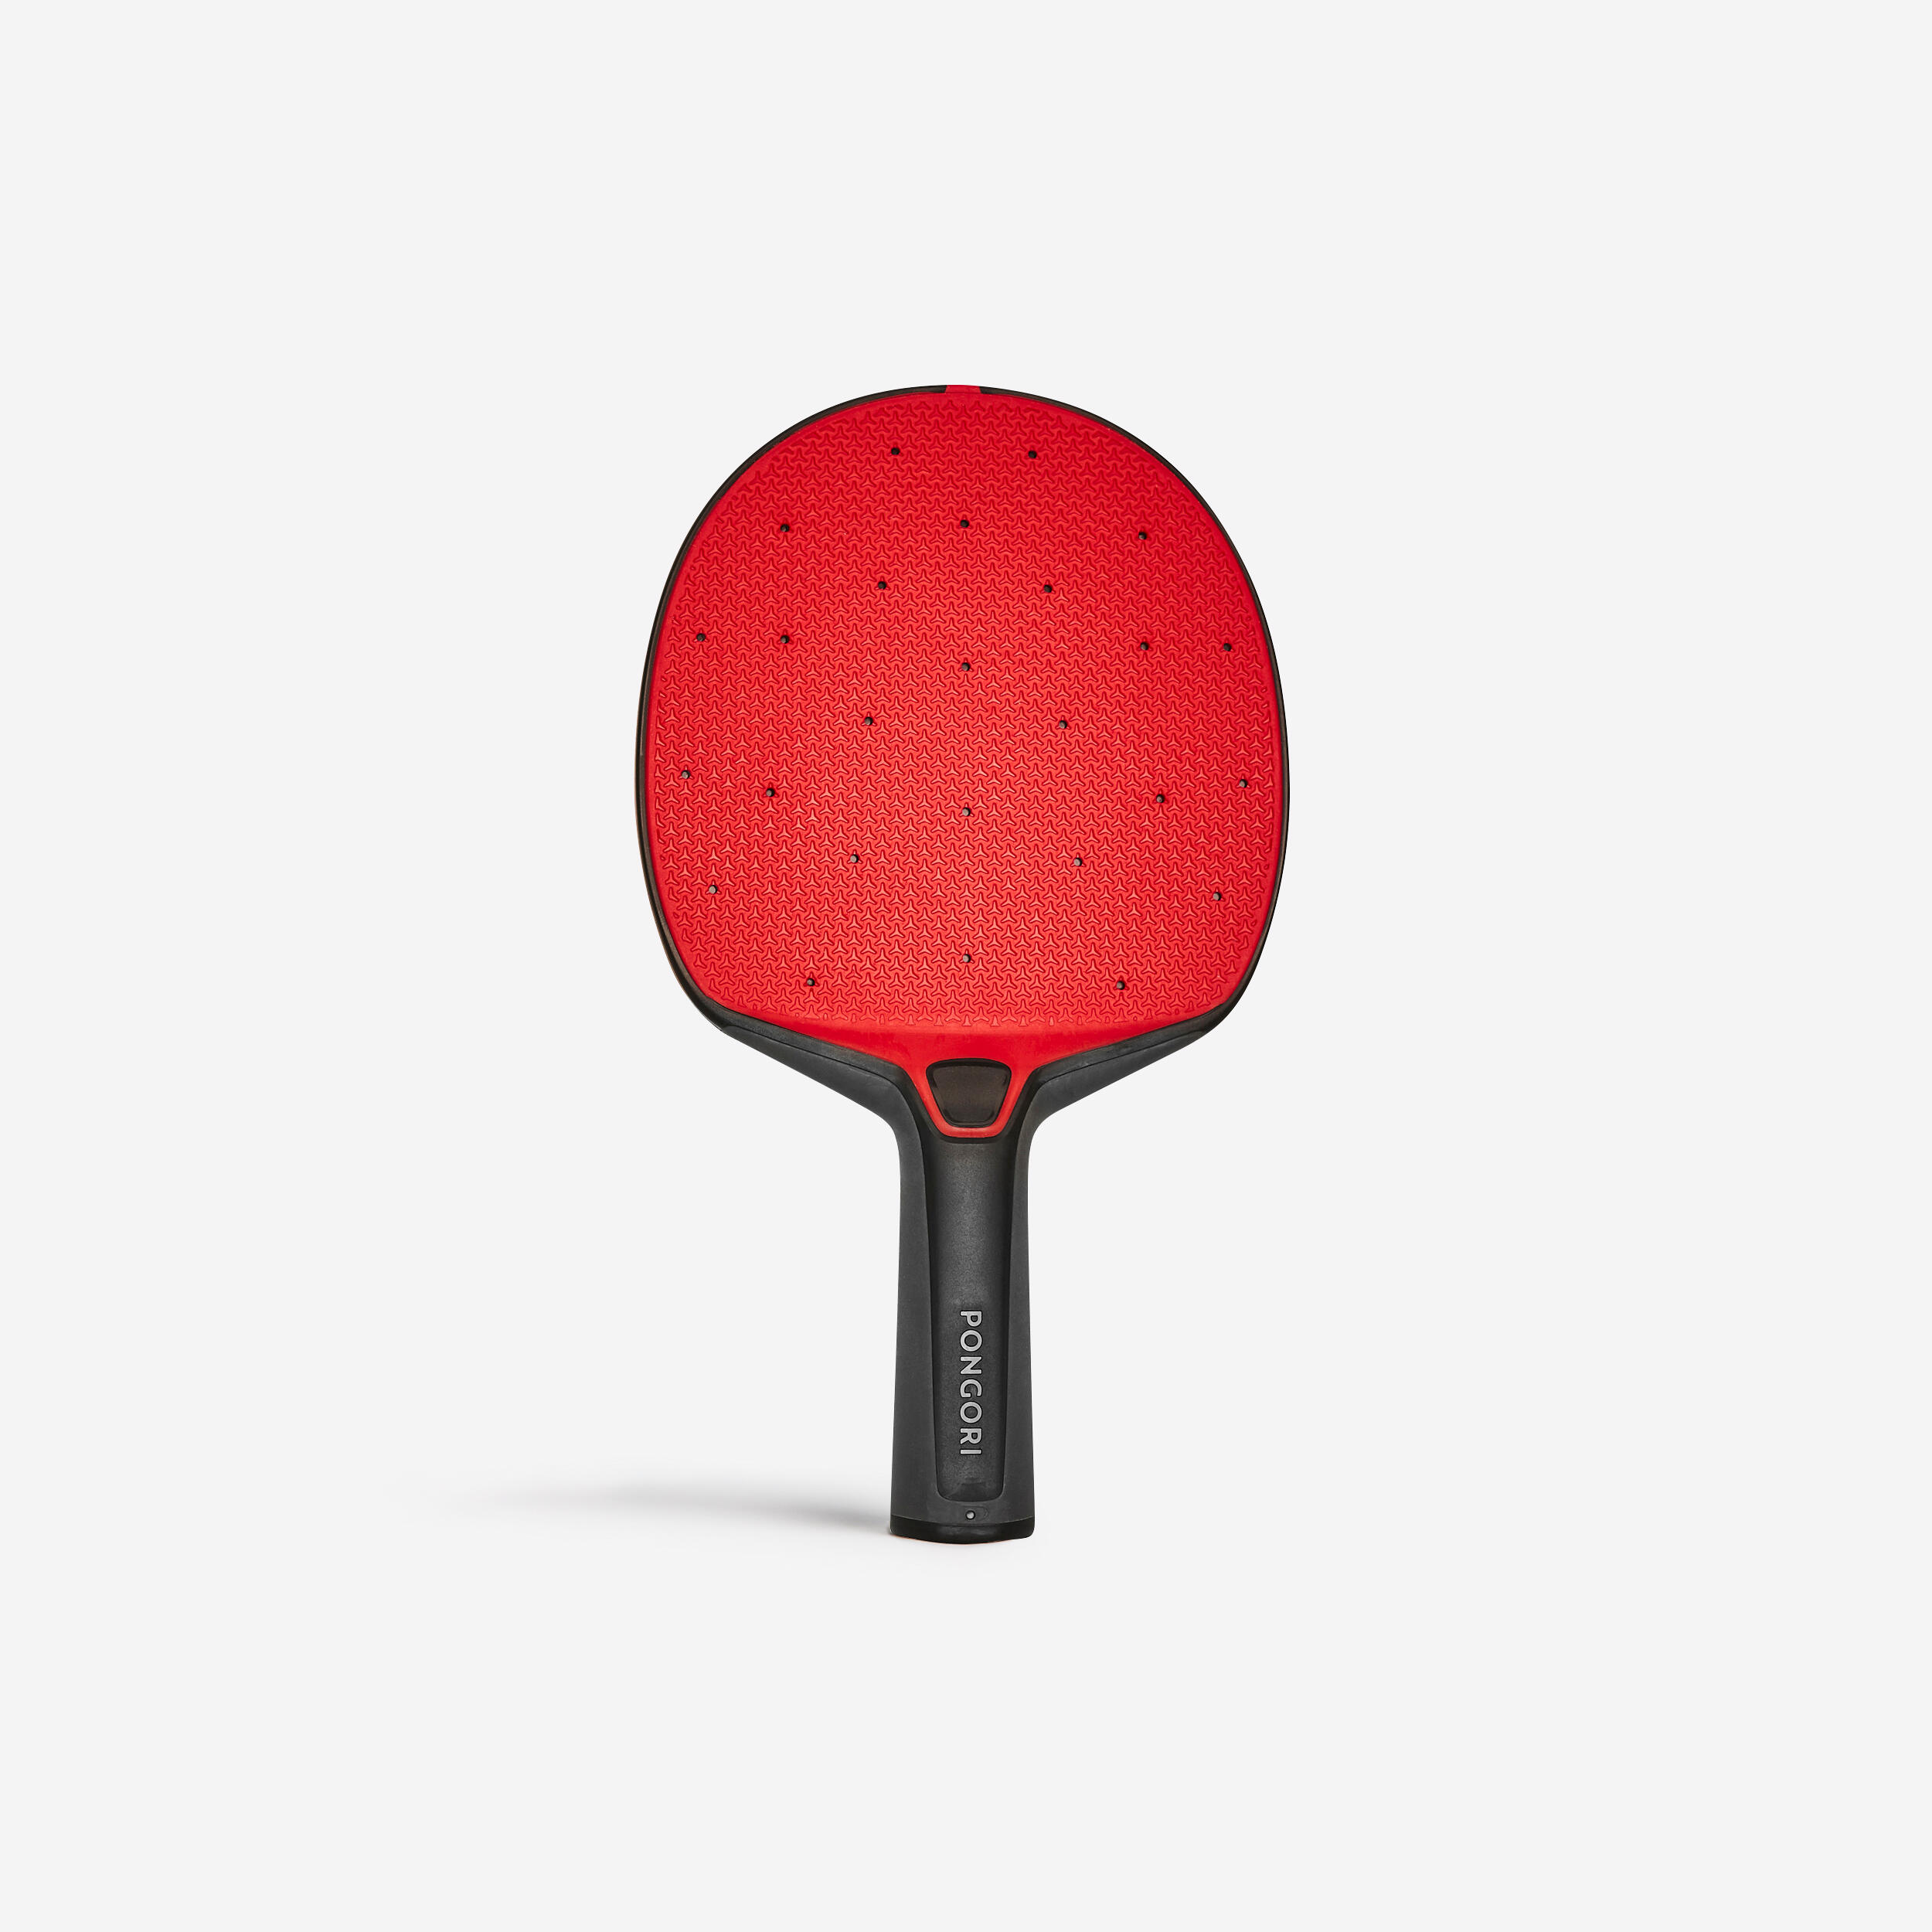 Paletă Rezistentă Tenis de Masă PPR130 Negru-Roșu La Oferta Online decathlon imagine La Oferta Online